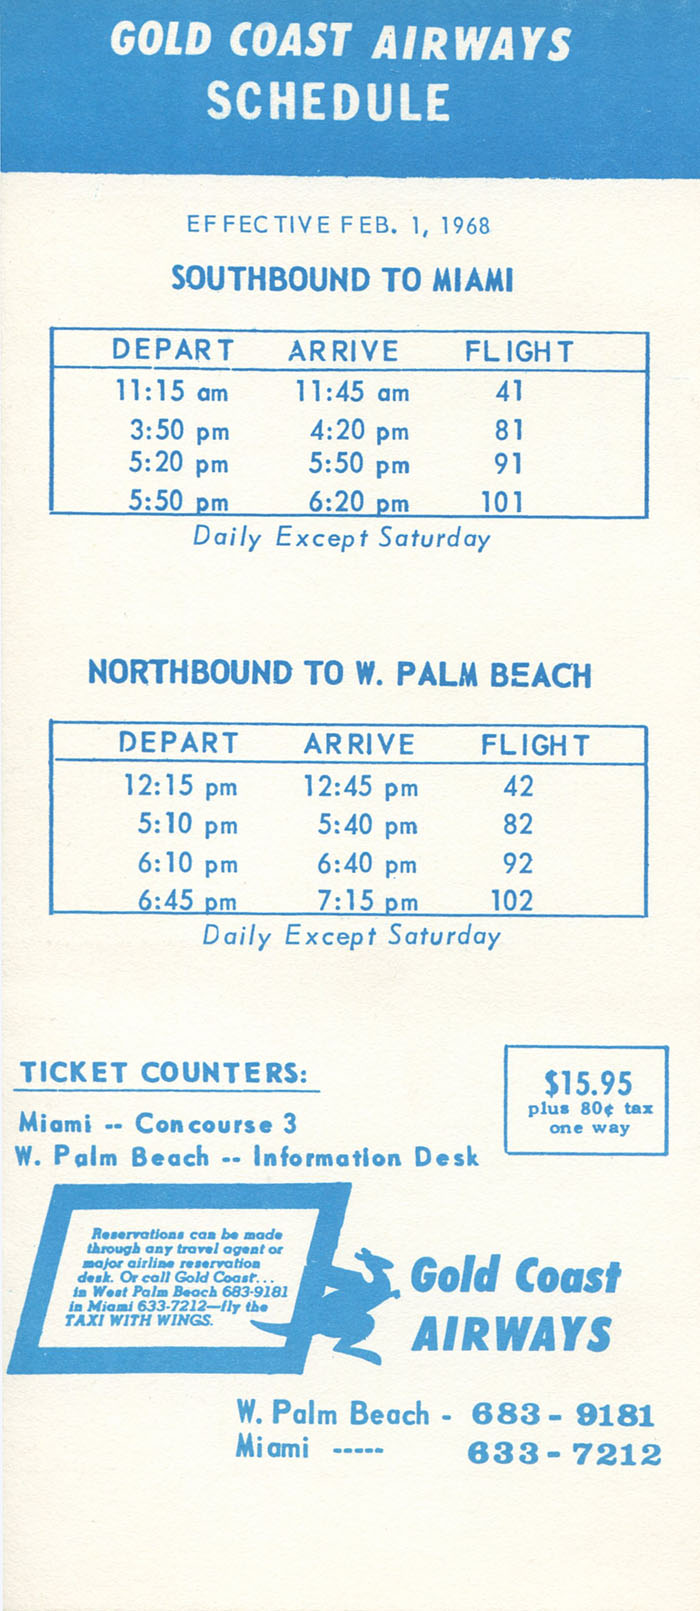 Gold Coast Airways timetable schedule